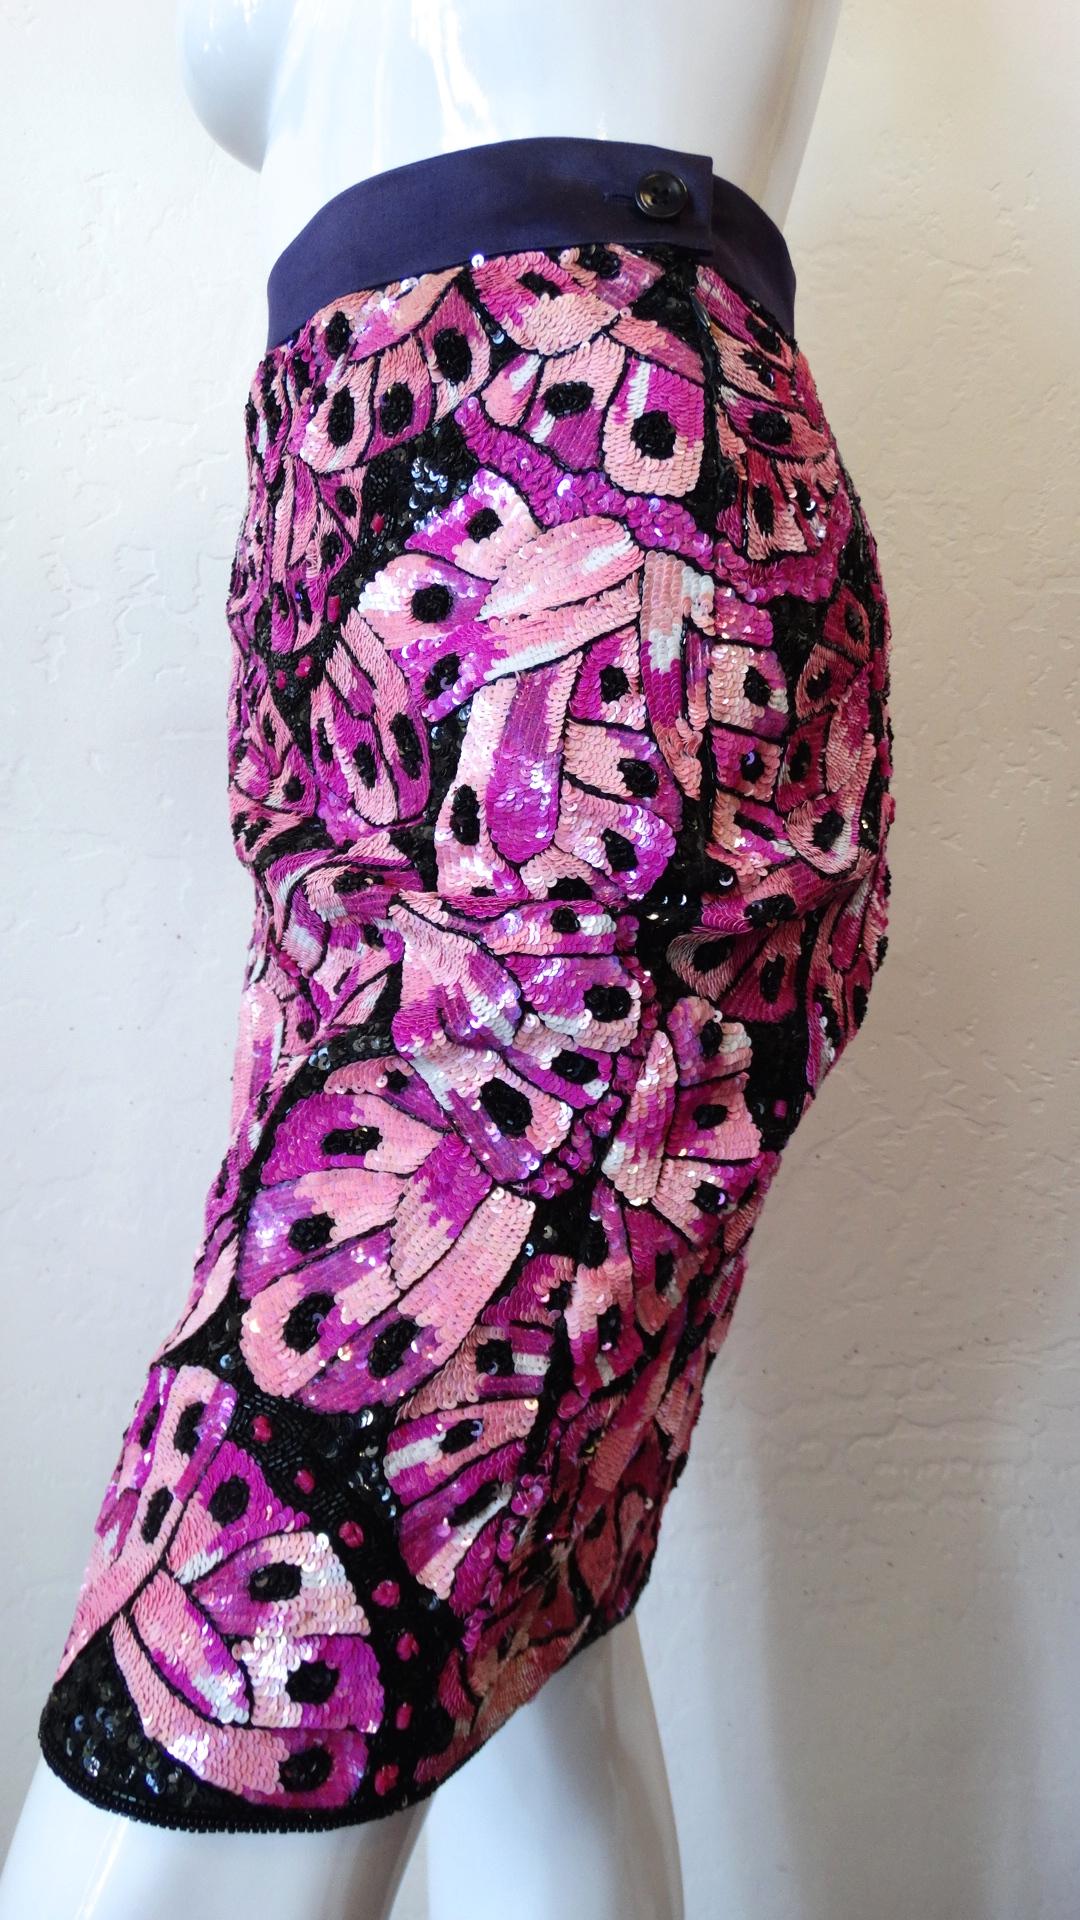 Ajoutez un peu d'éclat à votre garde-robe d'été avec notre jupe crayon Escada Couture des années 1980 aux paillettes Jupe en satin violet absolument recouverte de paillettes roses, magenta et noires dans un motif d'ailes de papillon ! Silhouette